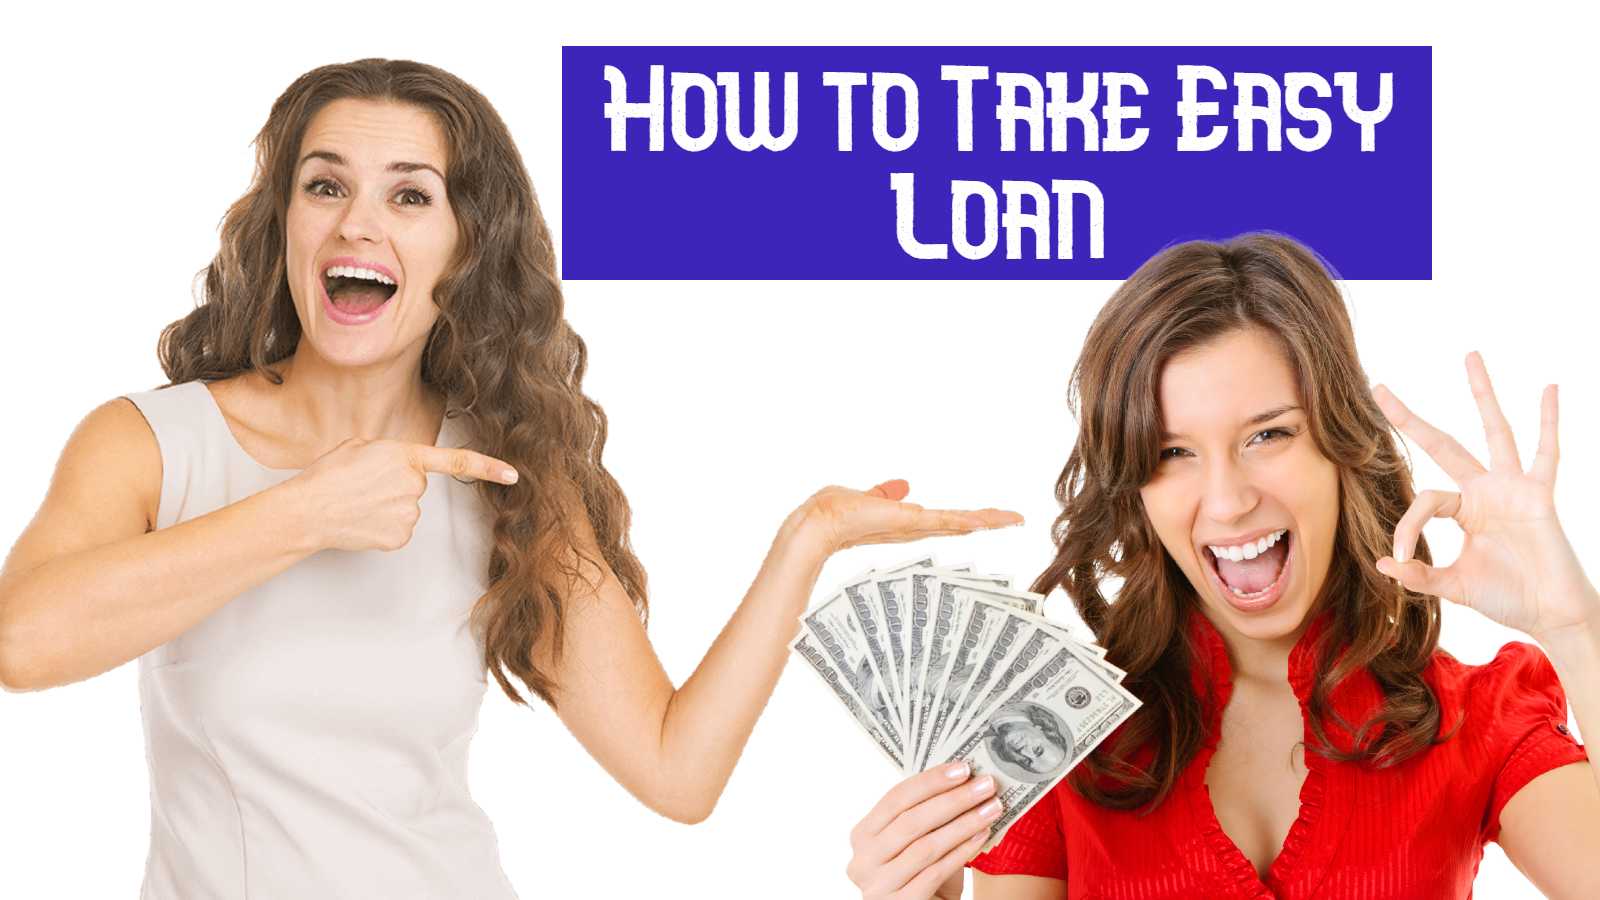 how-tomake-loan-asuccess